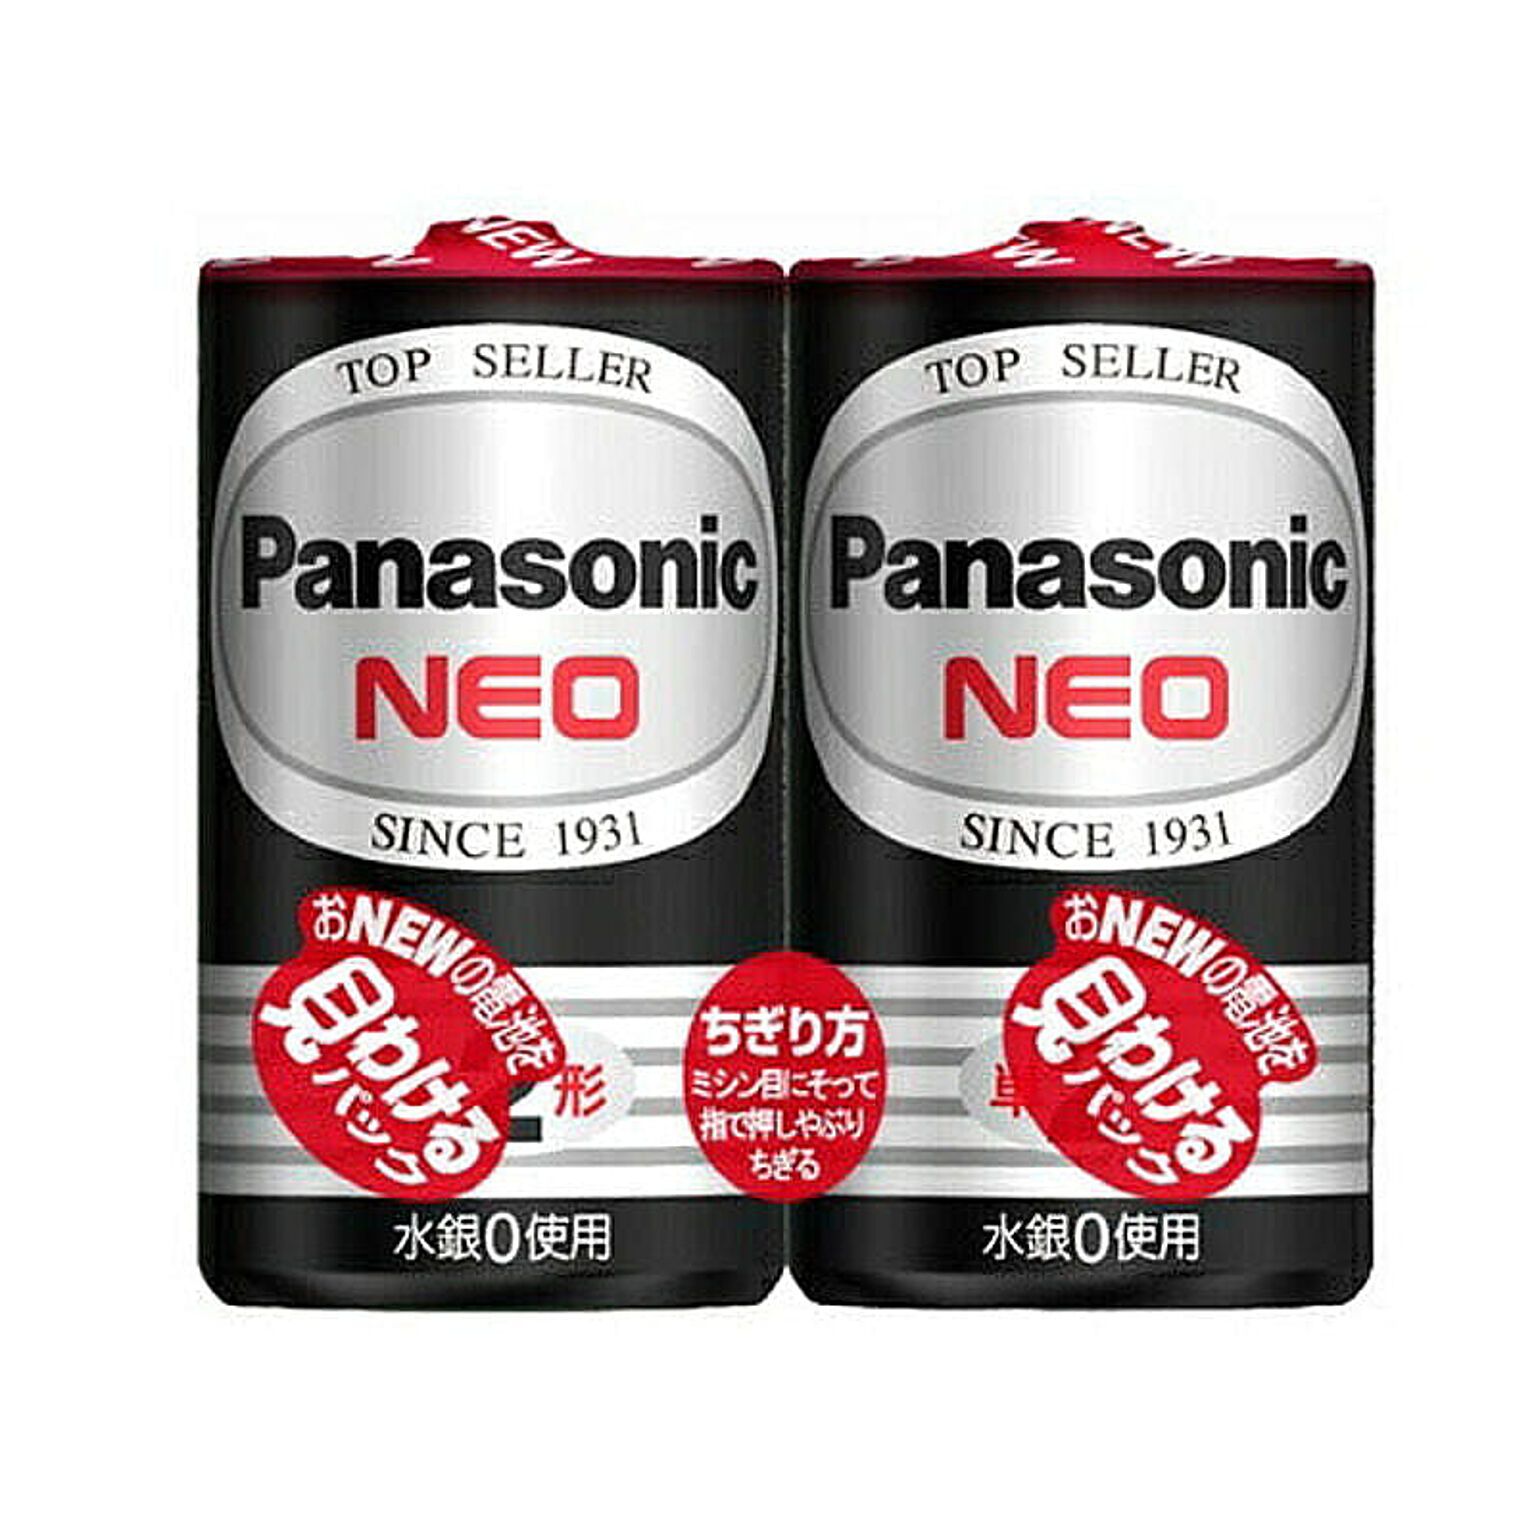 パナソニック Panasonic 乾電池 単2形マンガン乾電池 ネオ ブラック 1.5V 2本パック R14PNB/2VSE 管理No. 4984824410817